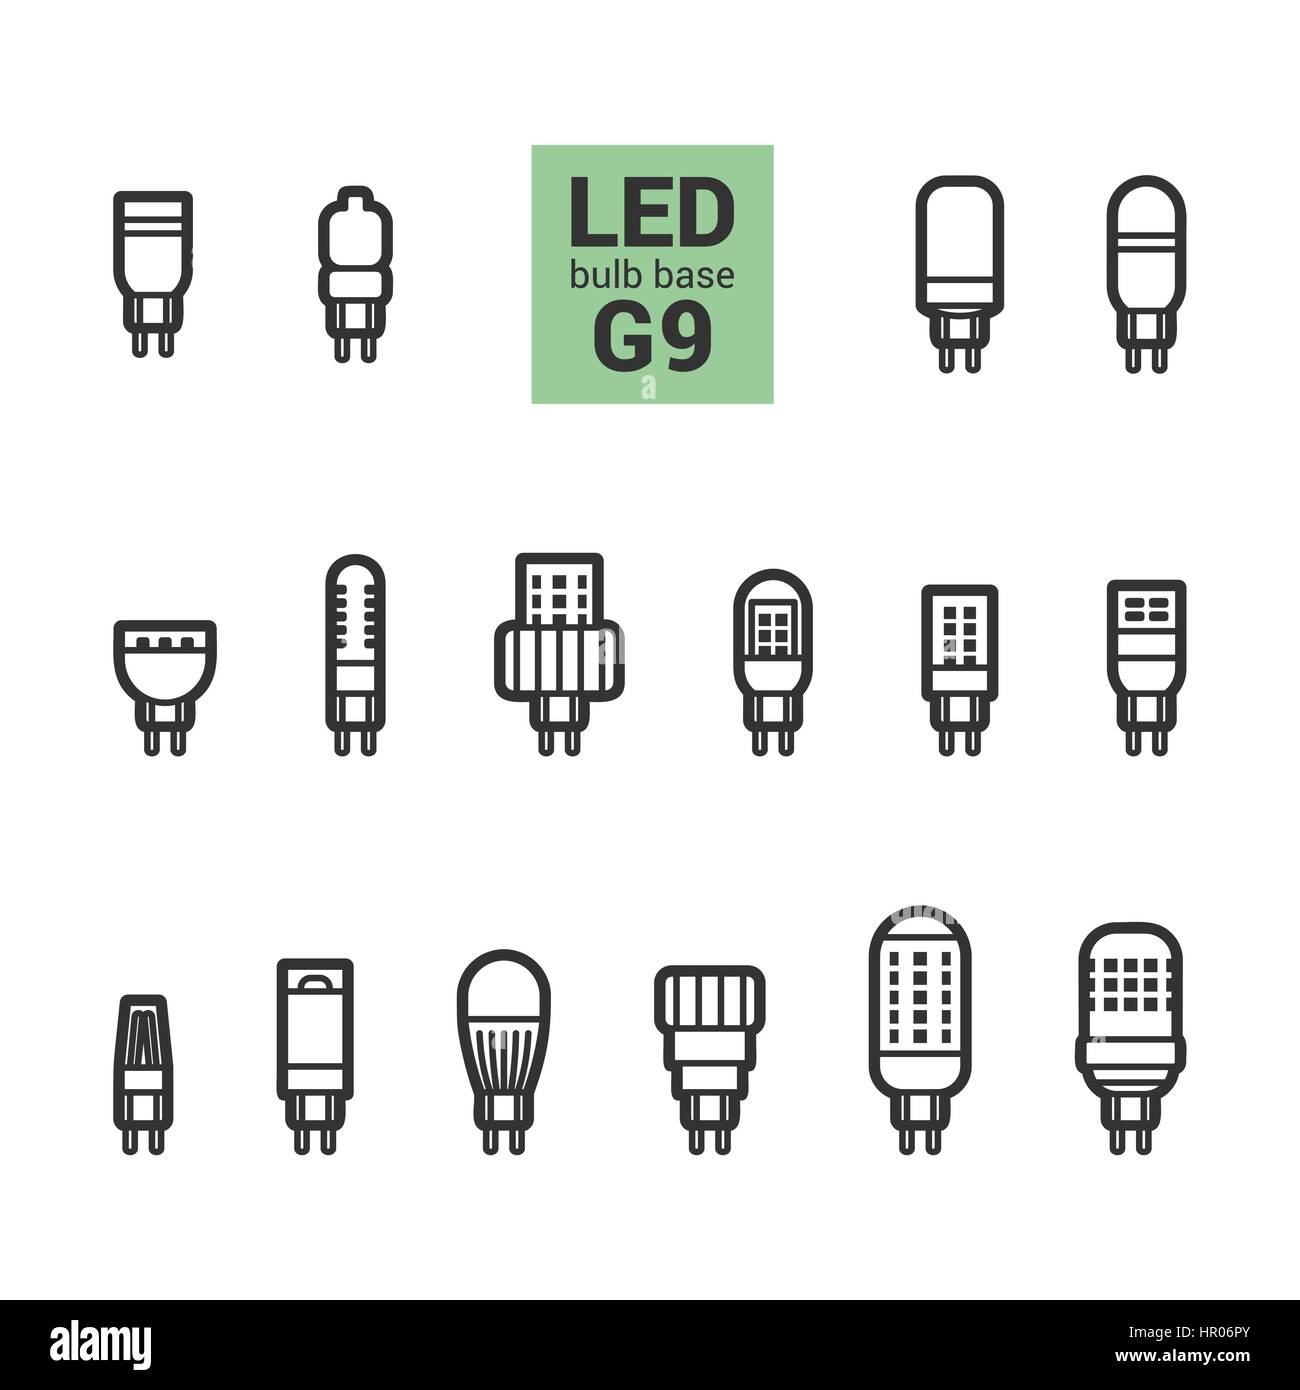 Maakte zich klaar pasta negeren LED-Lampen mit G9 Sockel, Vektor-Übersicht-Symbol auf weißem Hintergrund  festlegen Stock-Vektorgrafik - Alamy